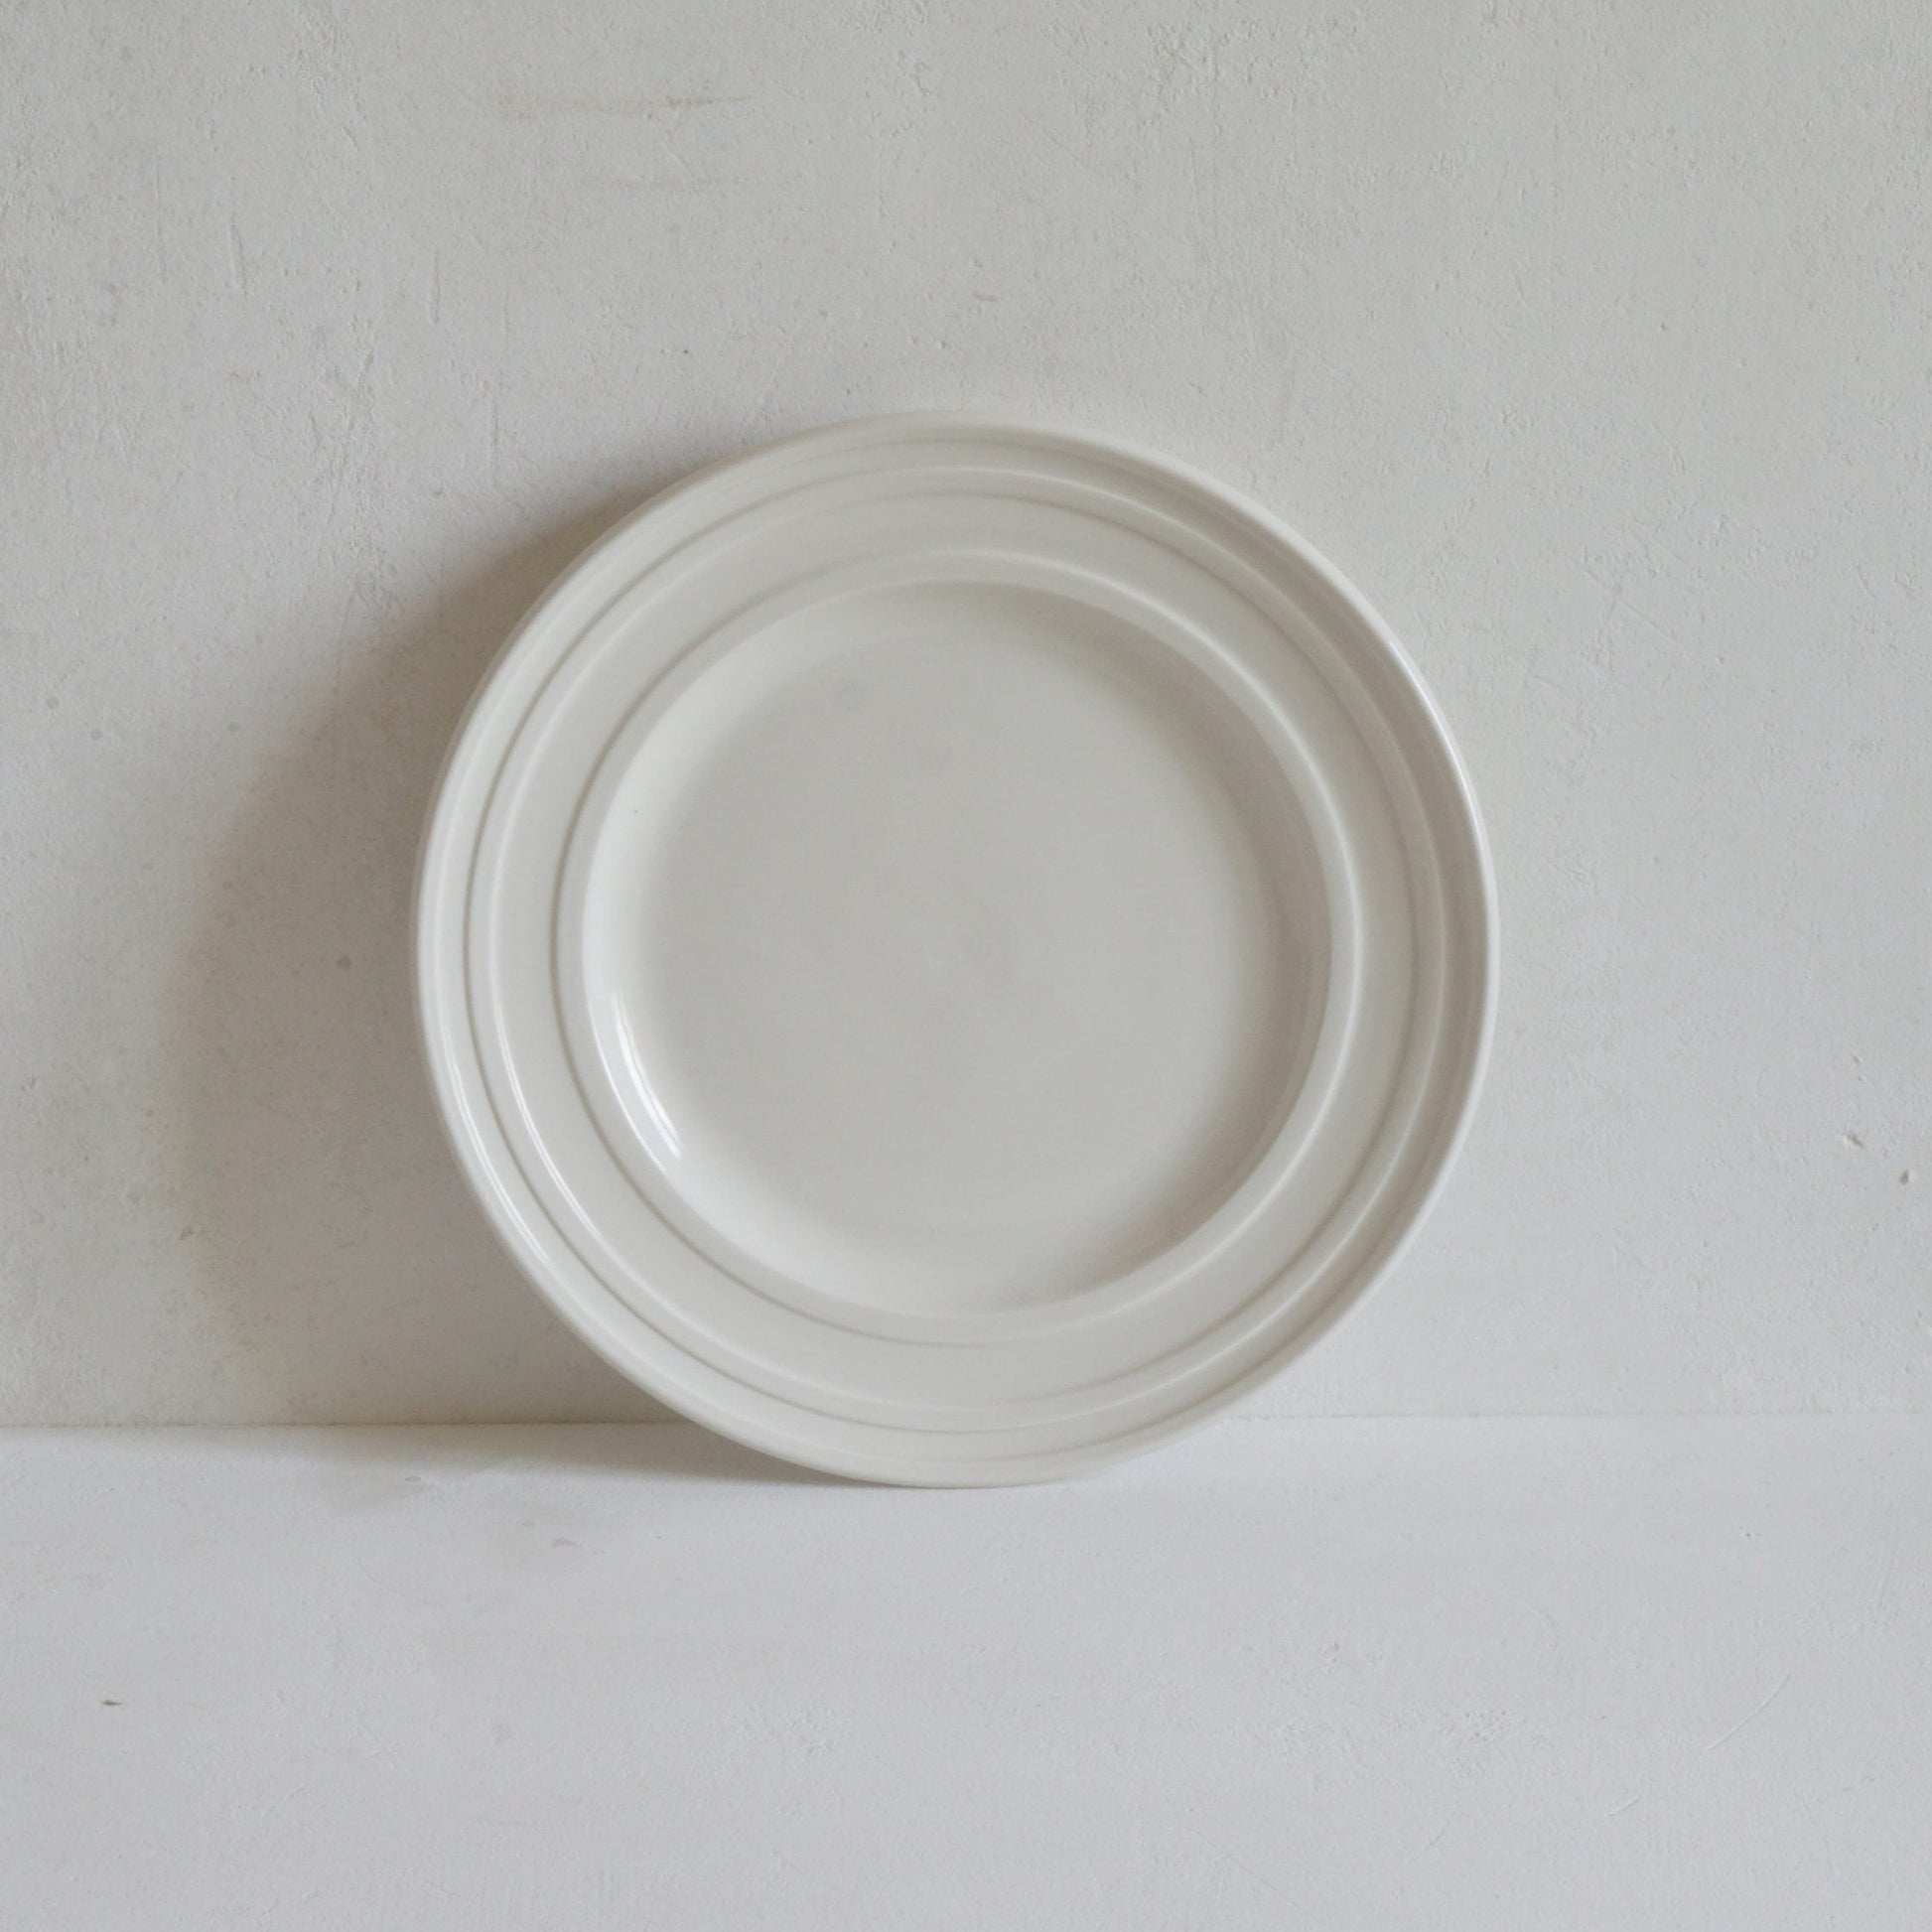 Impressed Line Side Plate | Luxury Dinnerware handmade in UK